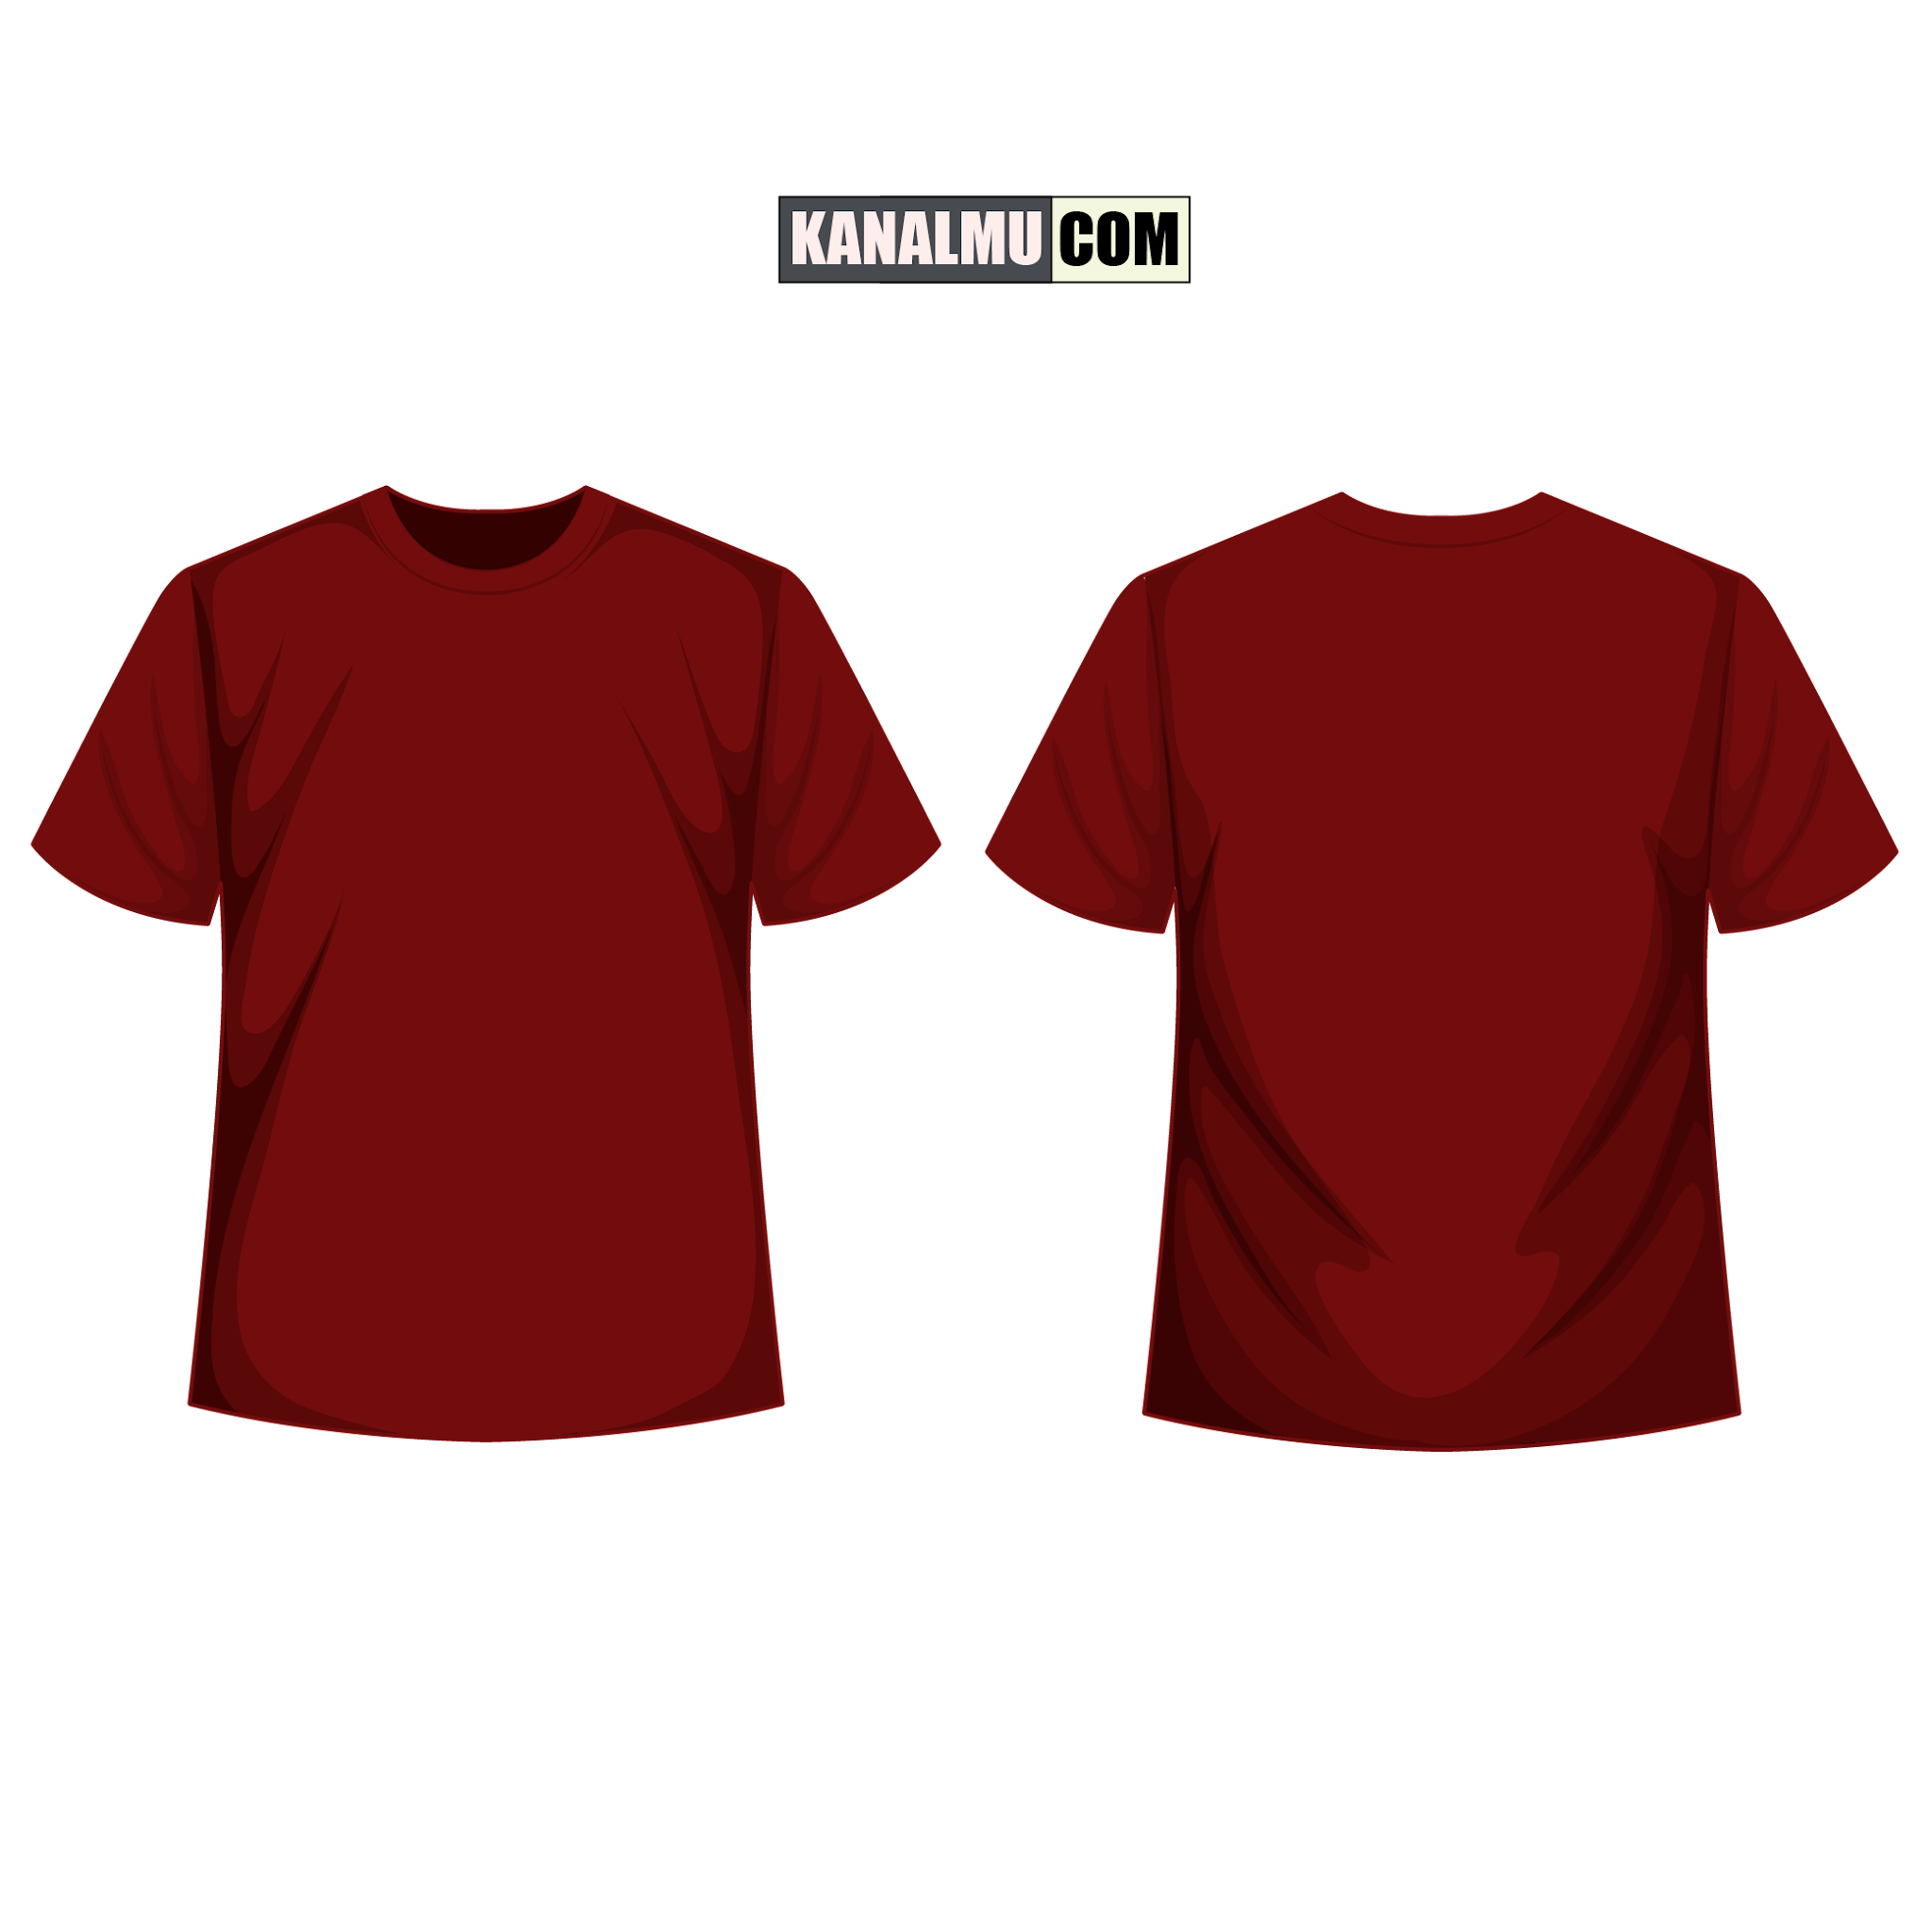 desain baju kaos merah maroon 5 warna
